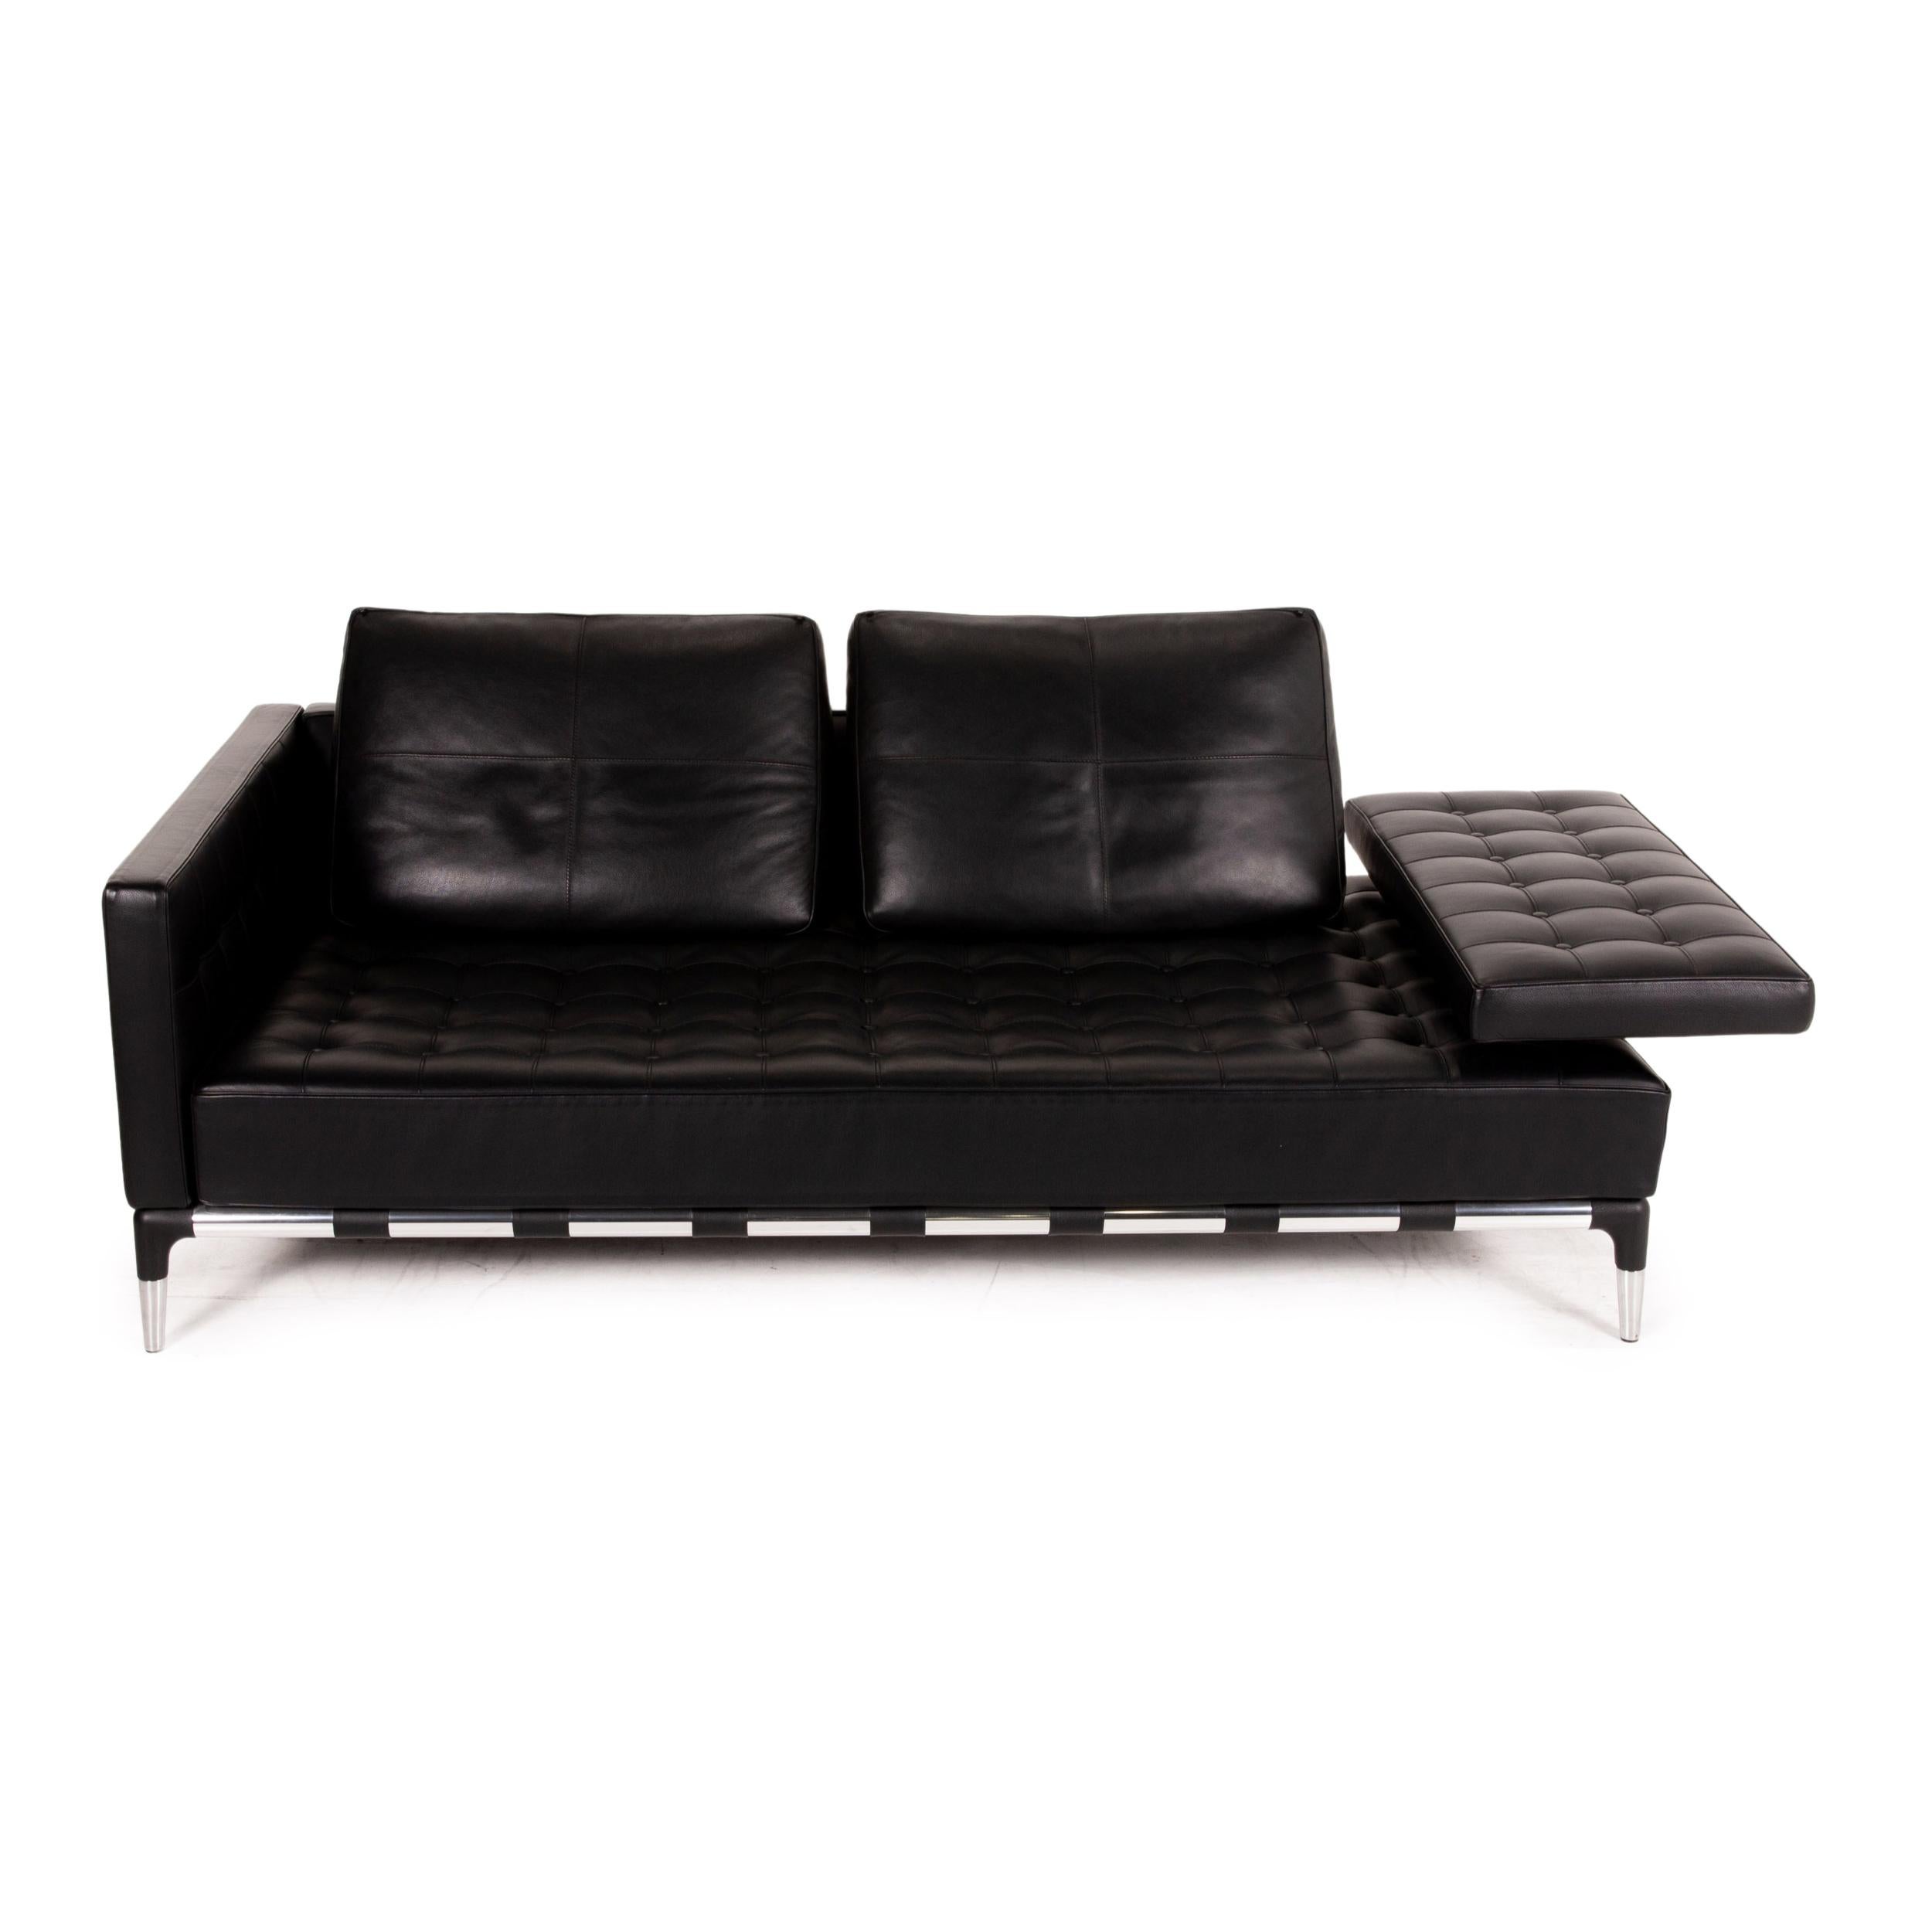 Italian Cassina 241 Privè Divano Leather Sofa Black Three-Seater Couch